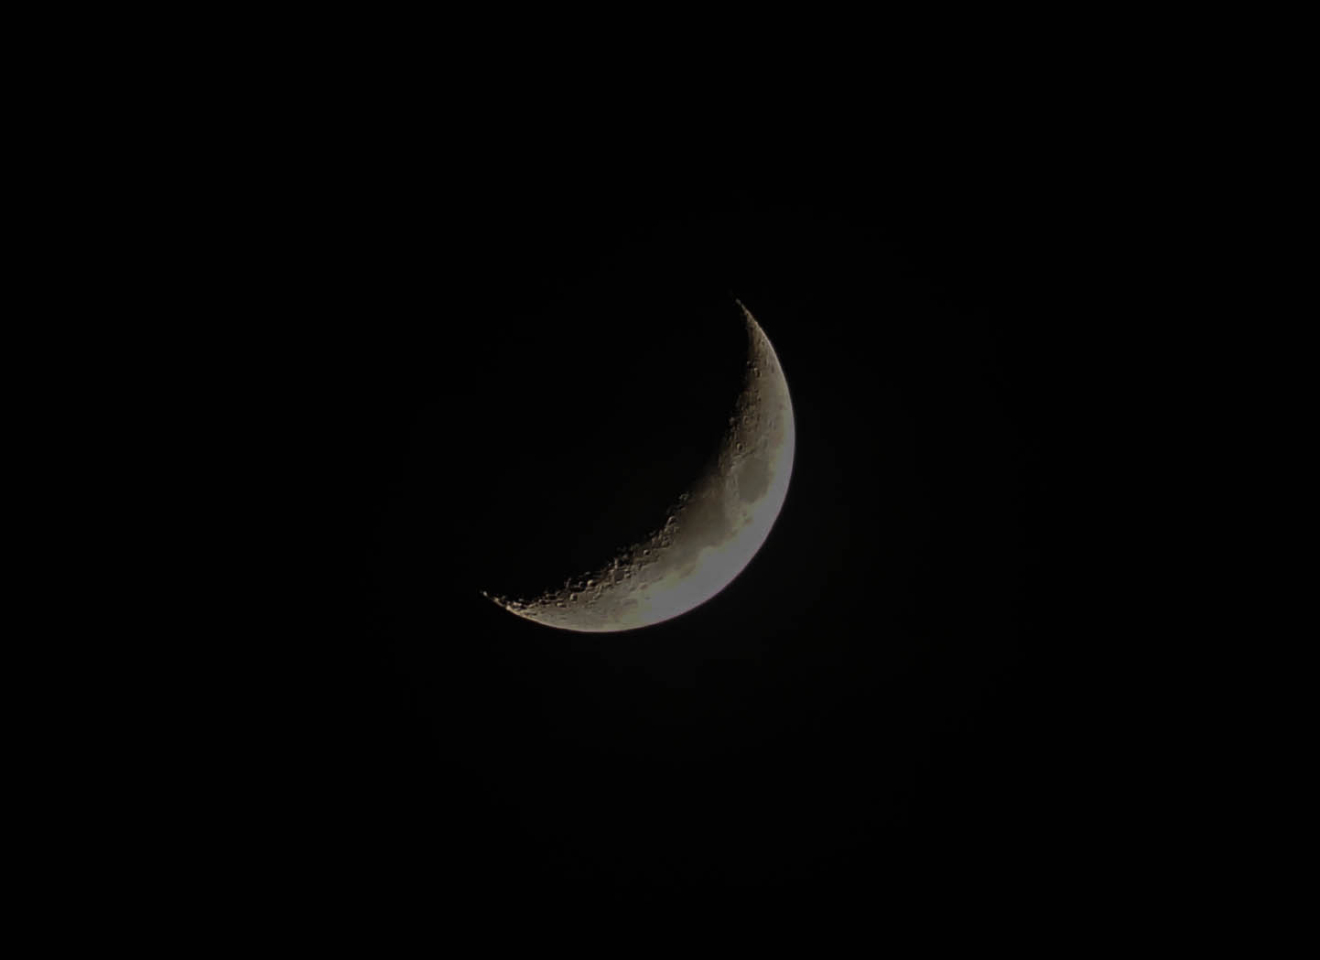 dark-half-moon-moon-761